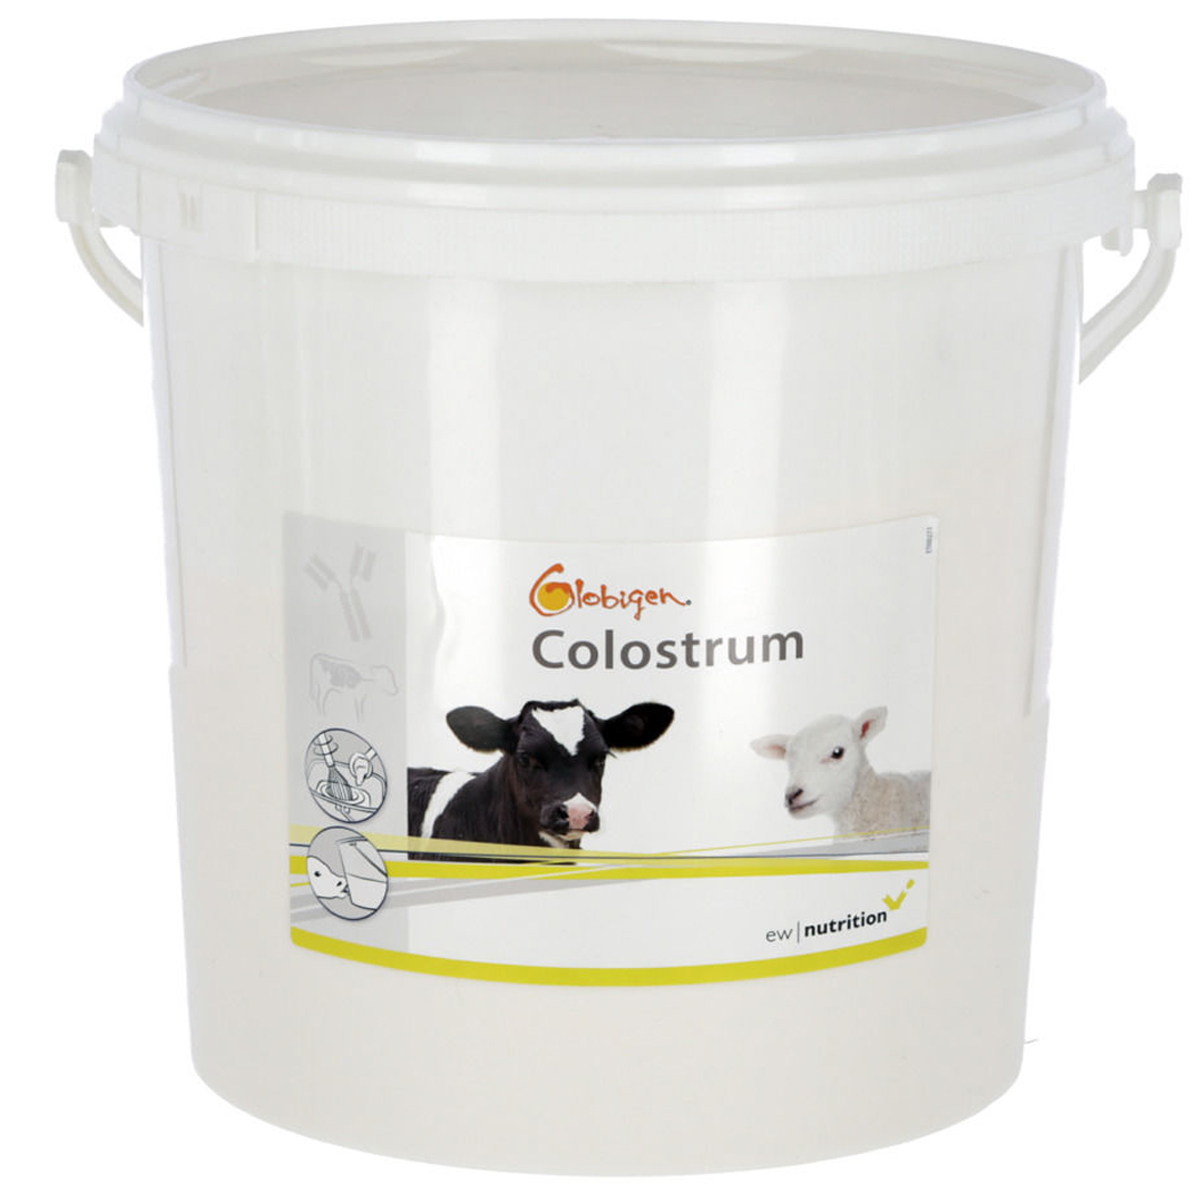 Globigen Colostrum Supplementary food